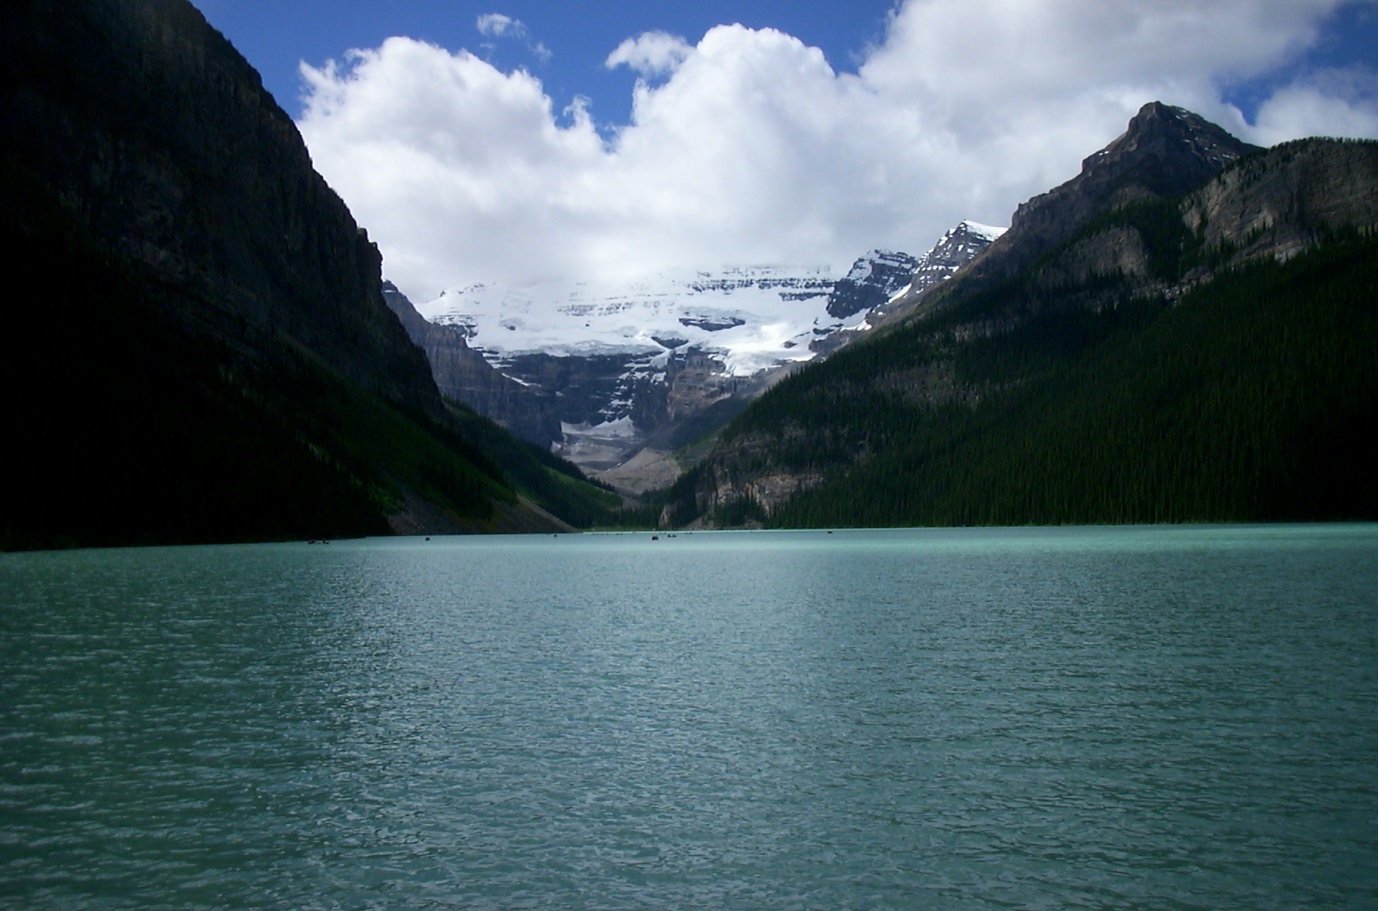 Open water by mountain range